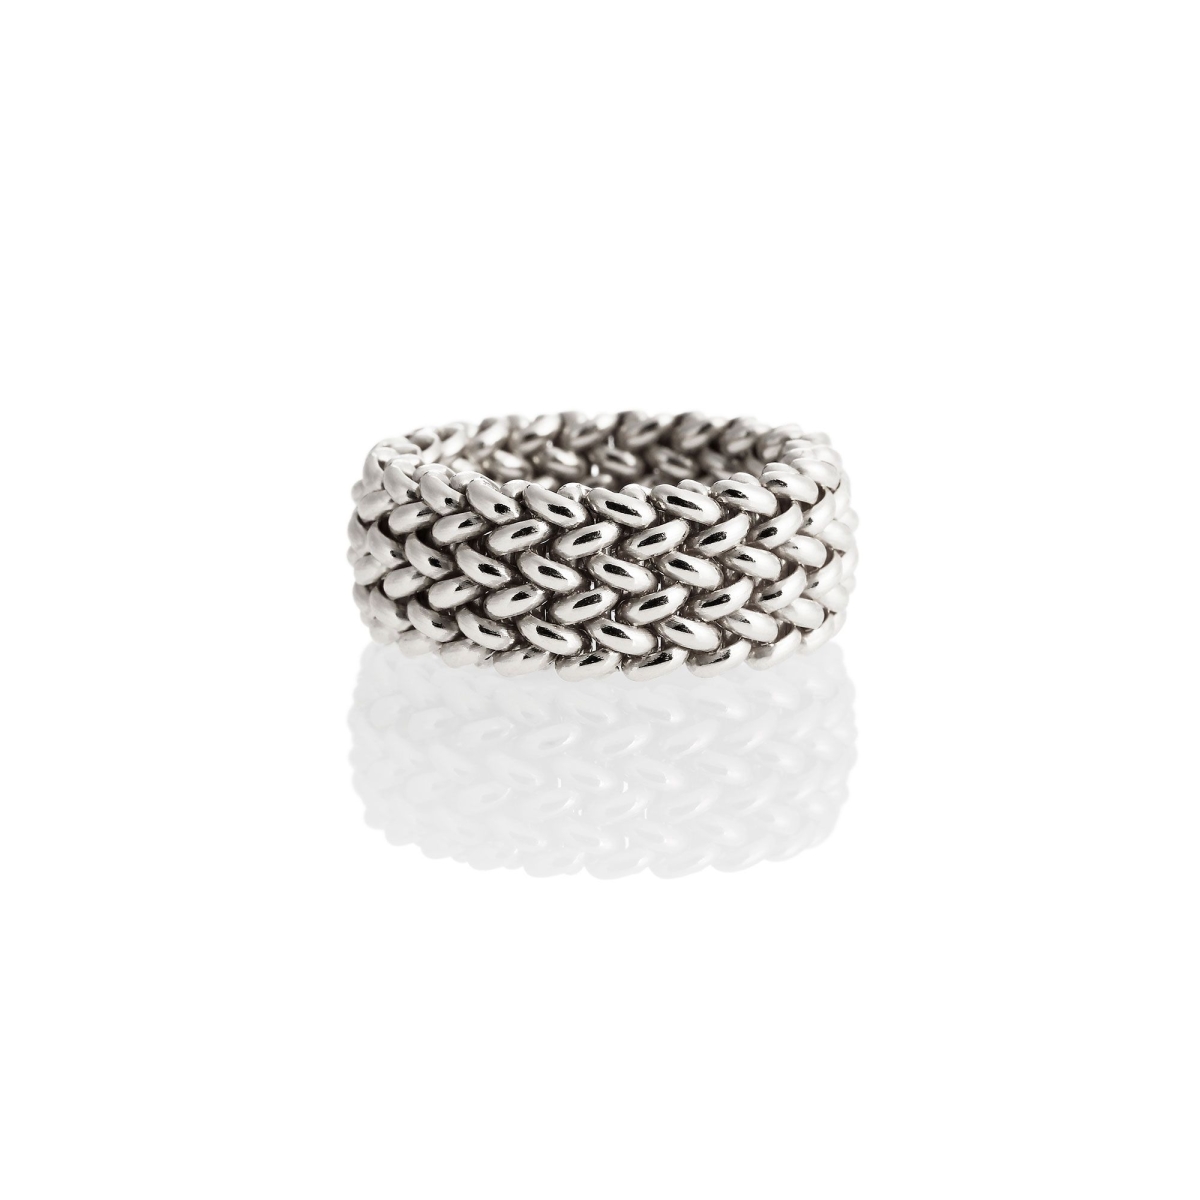 UNOAERRE - White Silver Ring Size Q-1/2